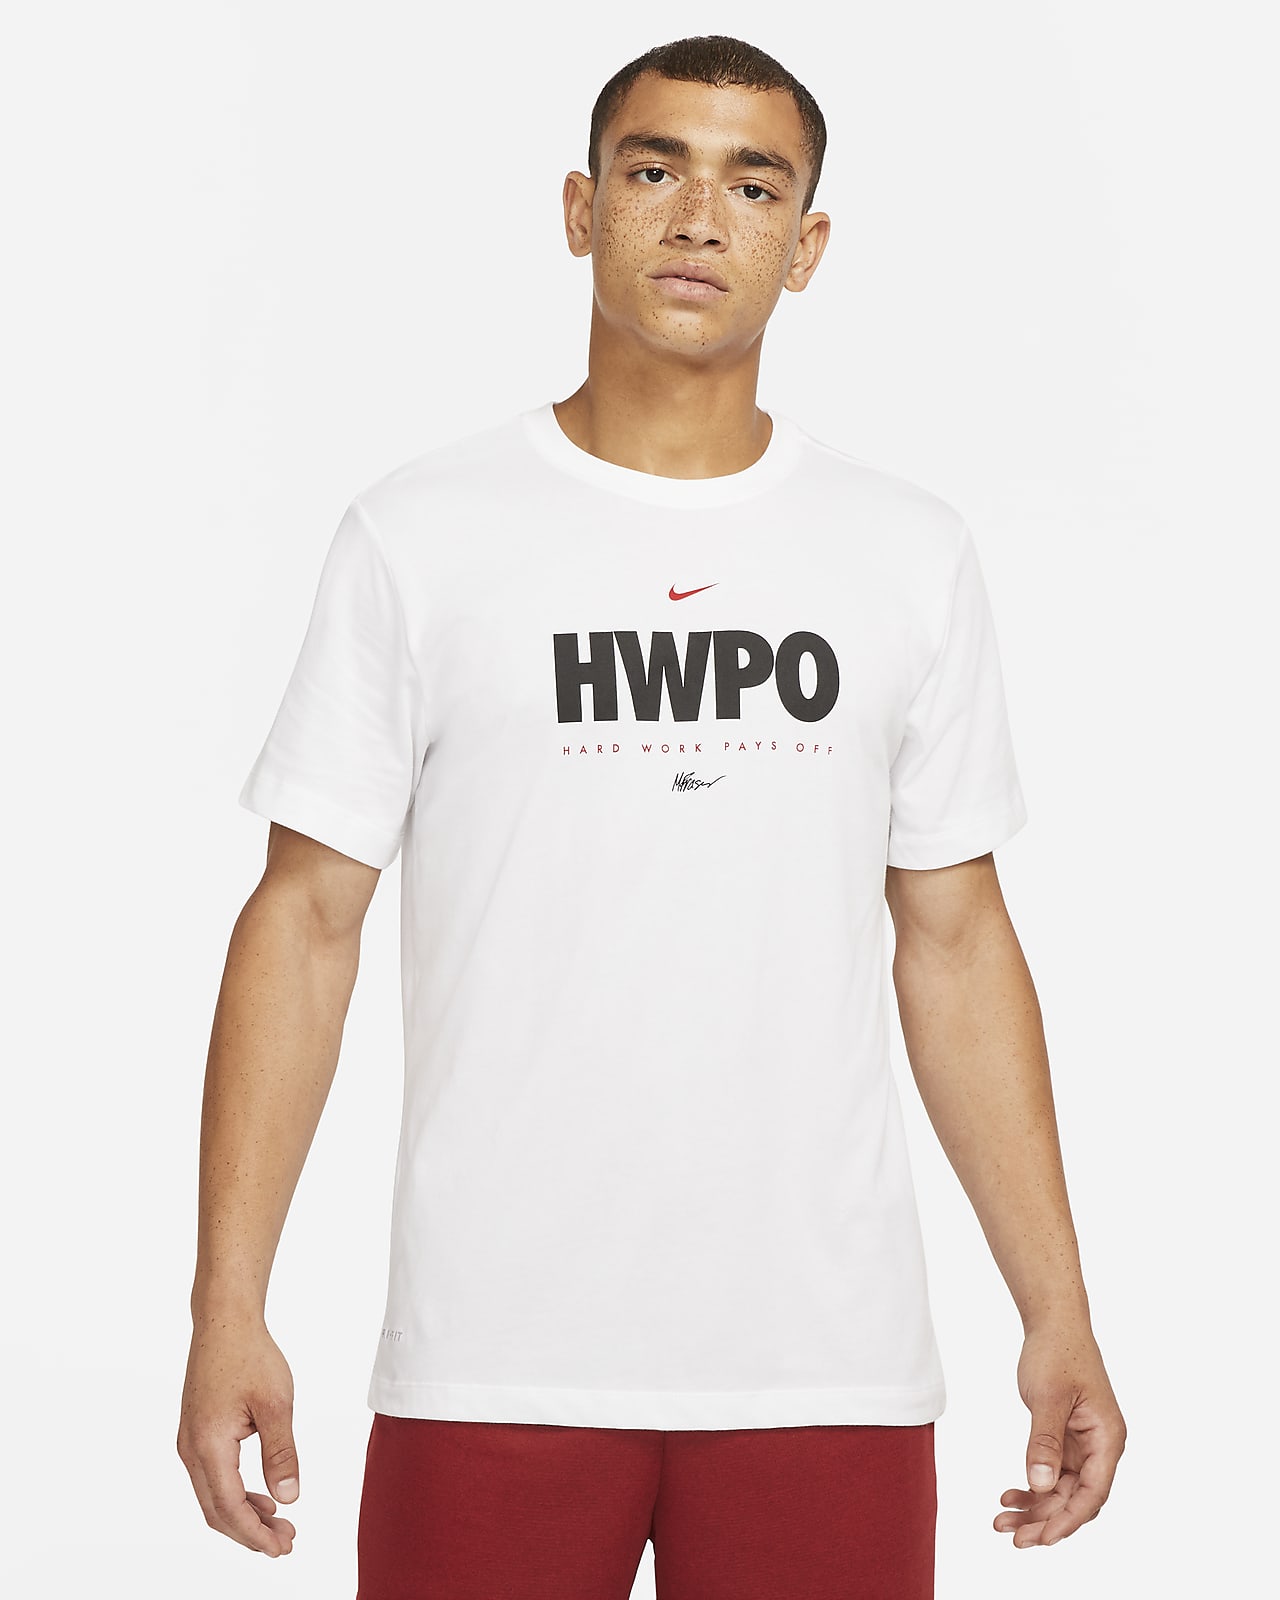 Ανδρικό T-Shirt προπόνησης Nike Dri-FIT "HWPO"